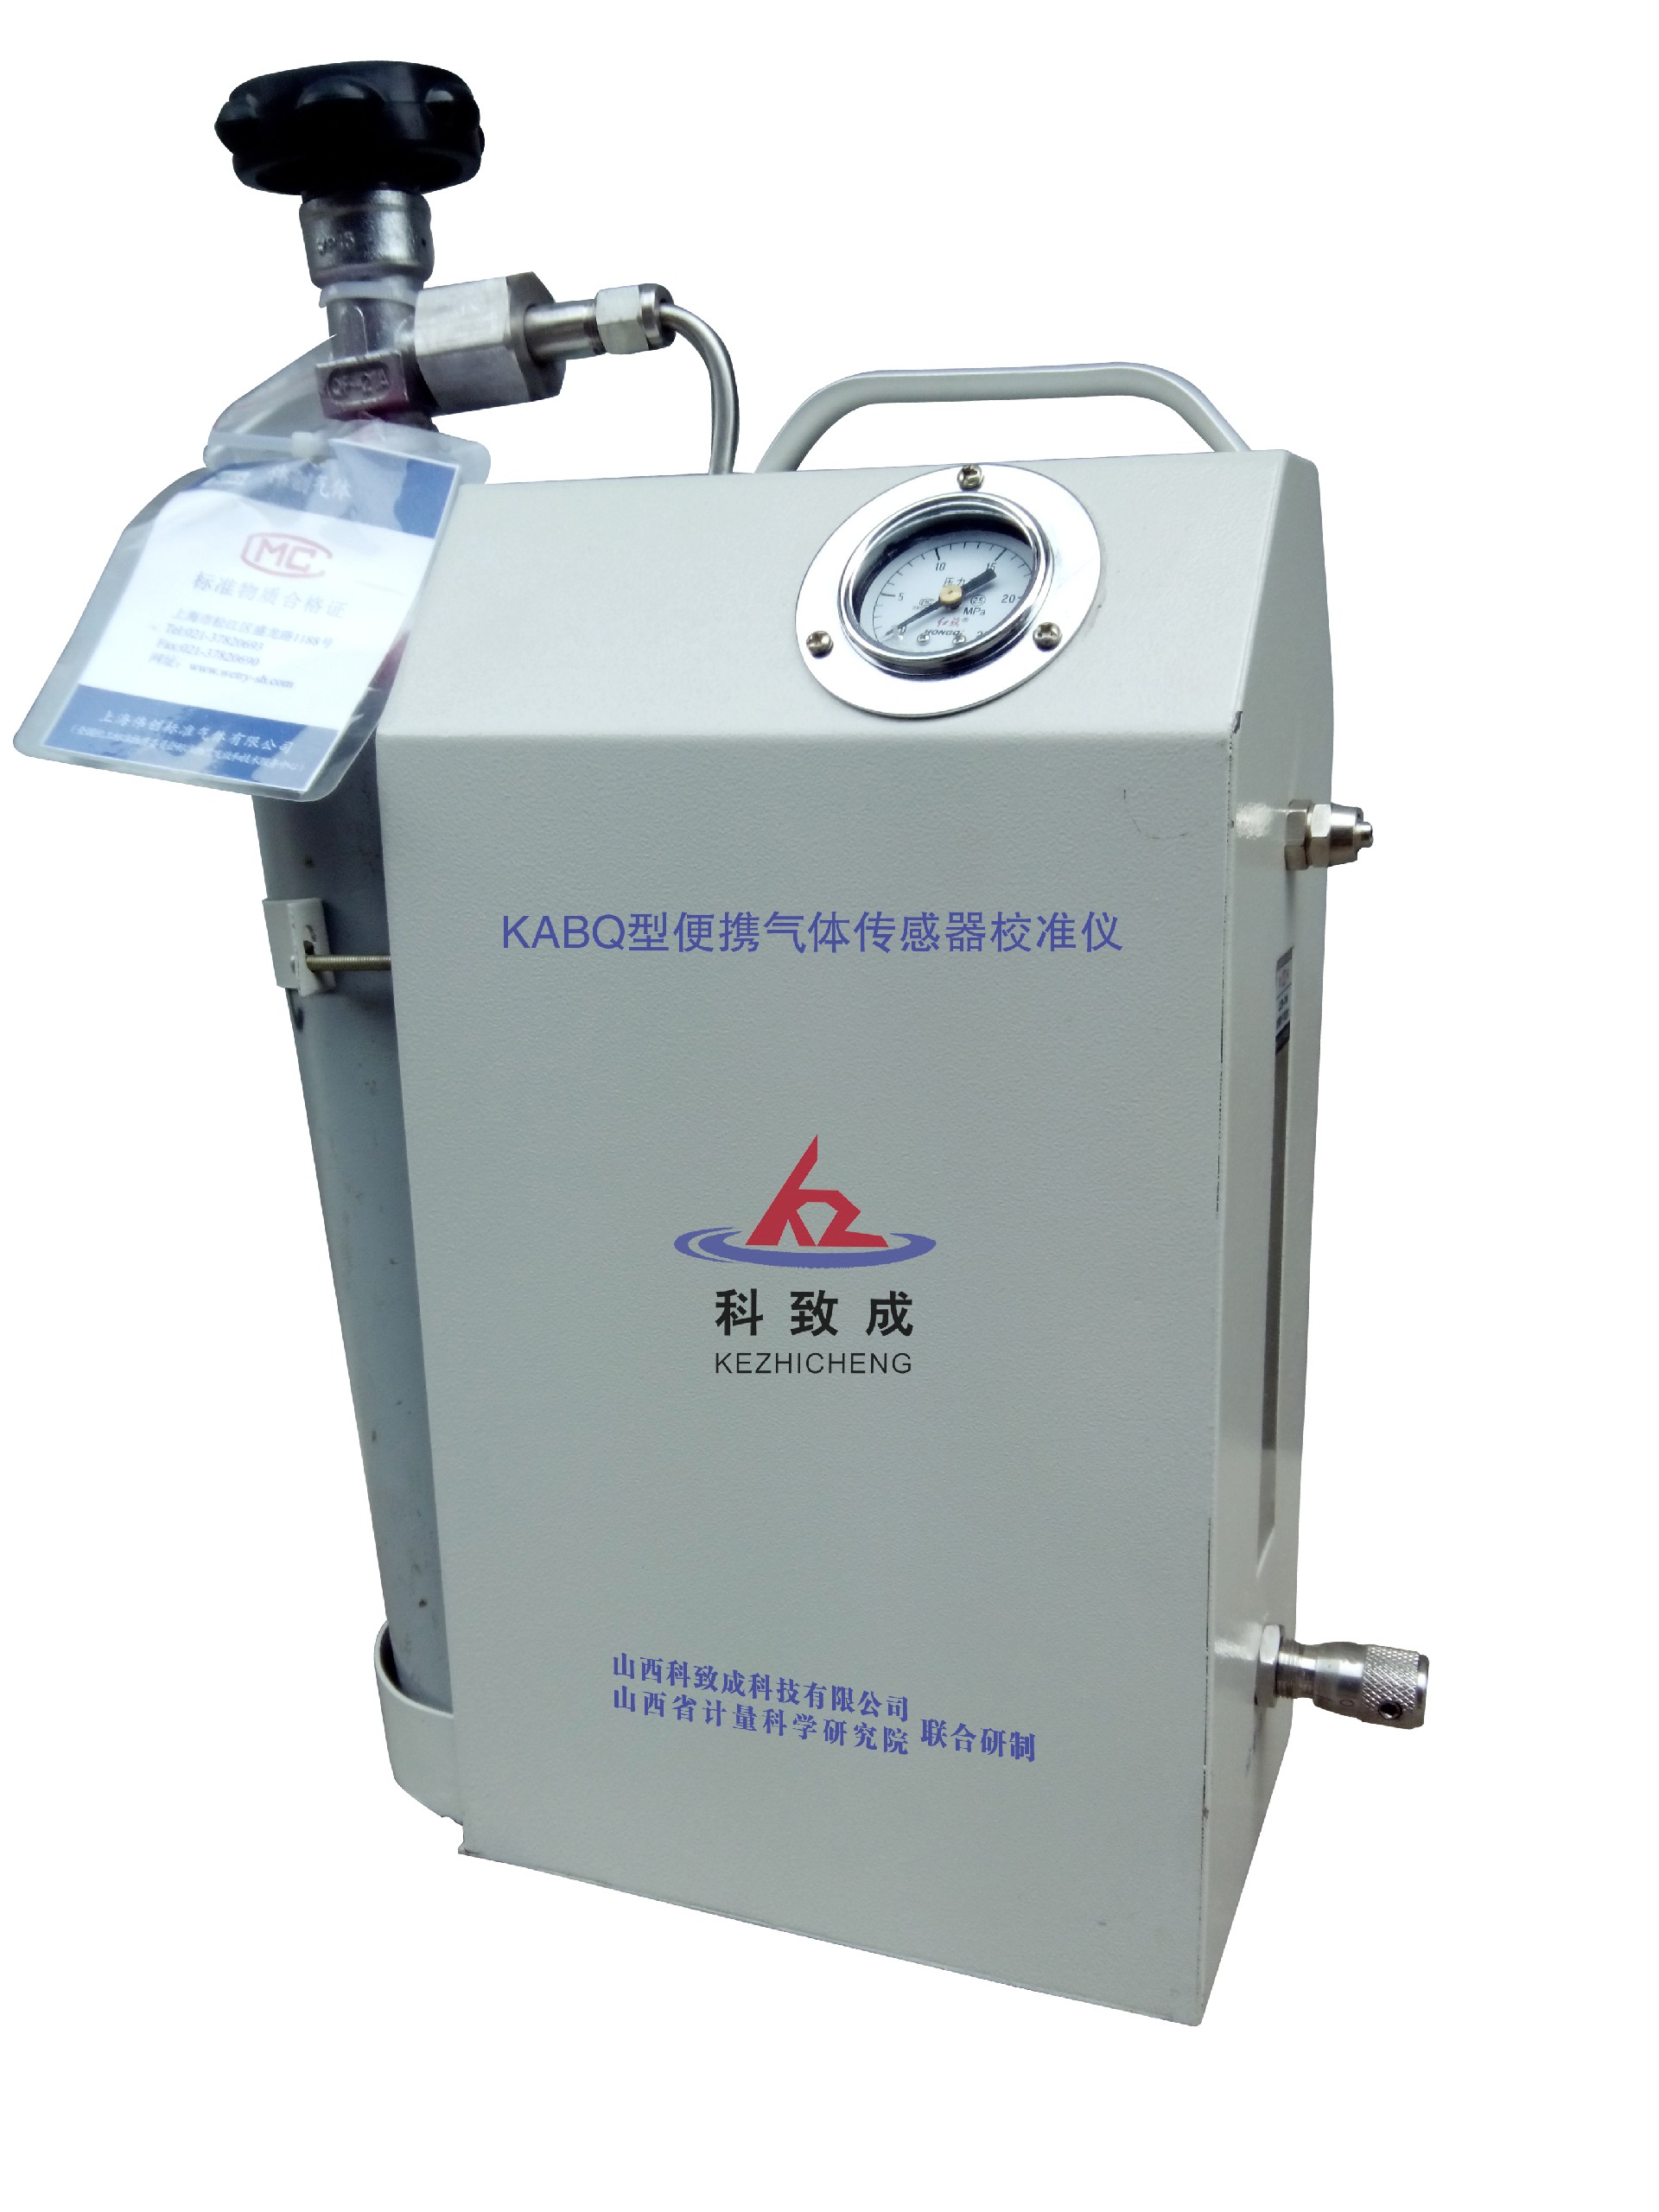 忻州KABQ型便携气体传感器校准仪